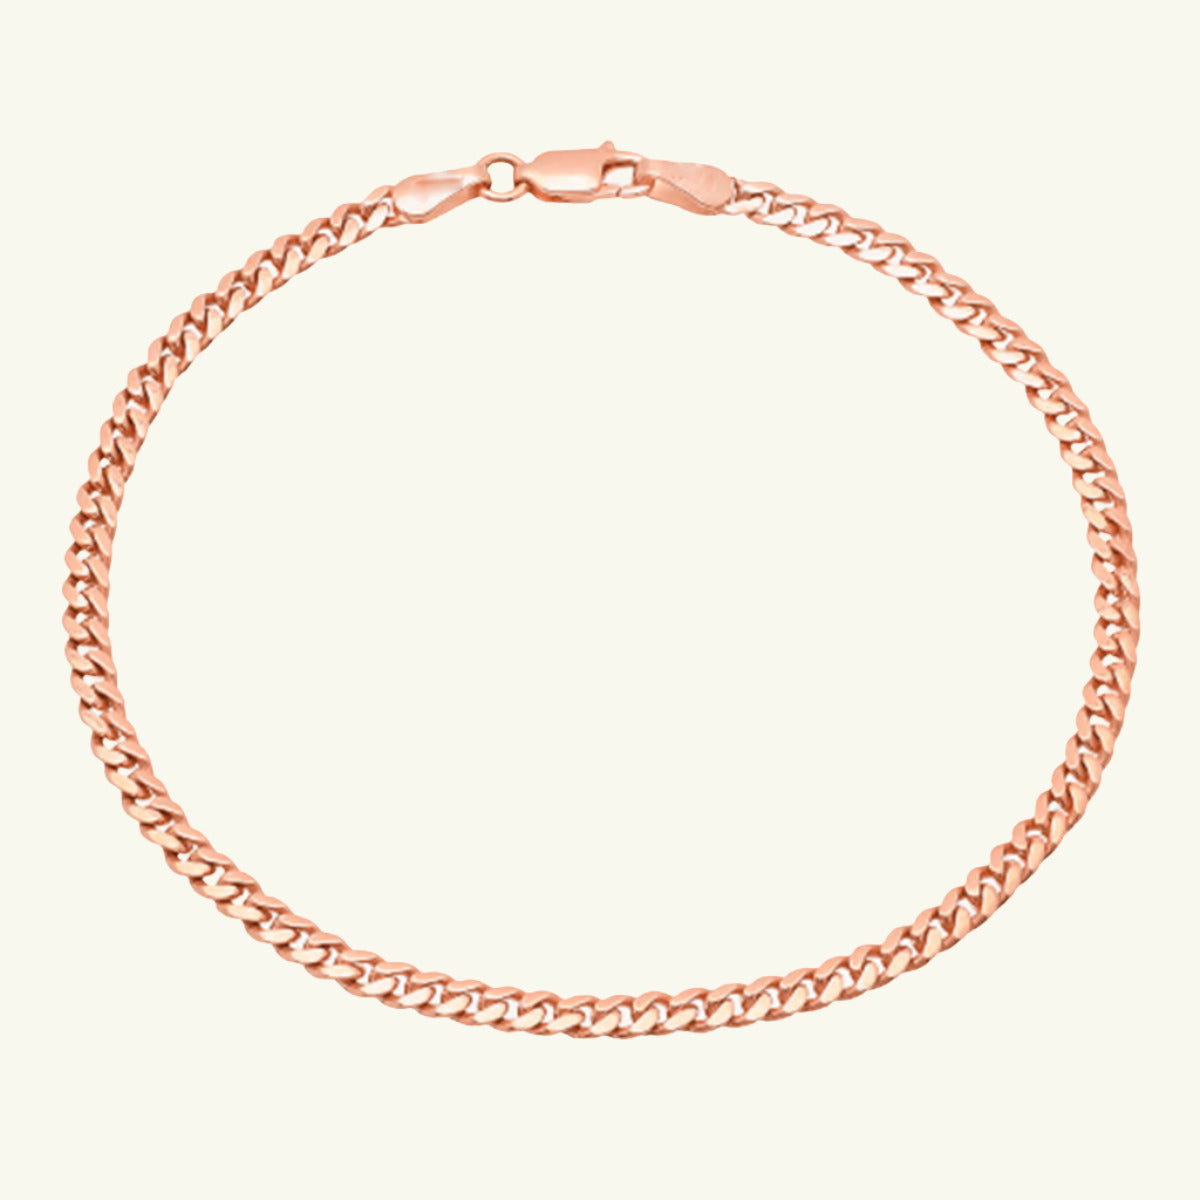 Cuban Chain Bracelet - Wrenlee